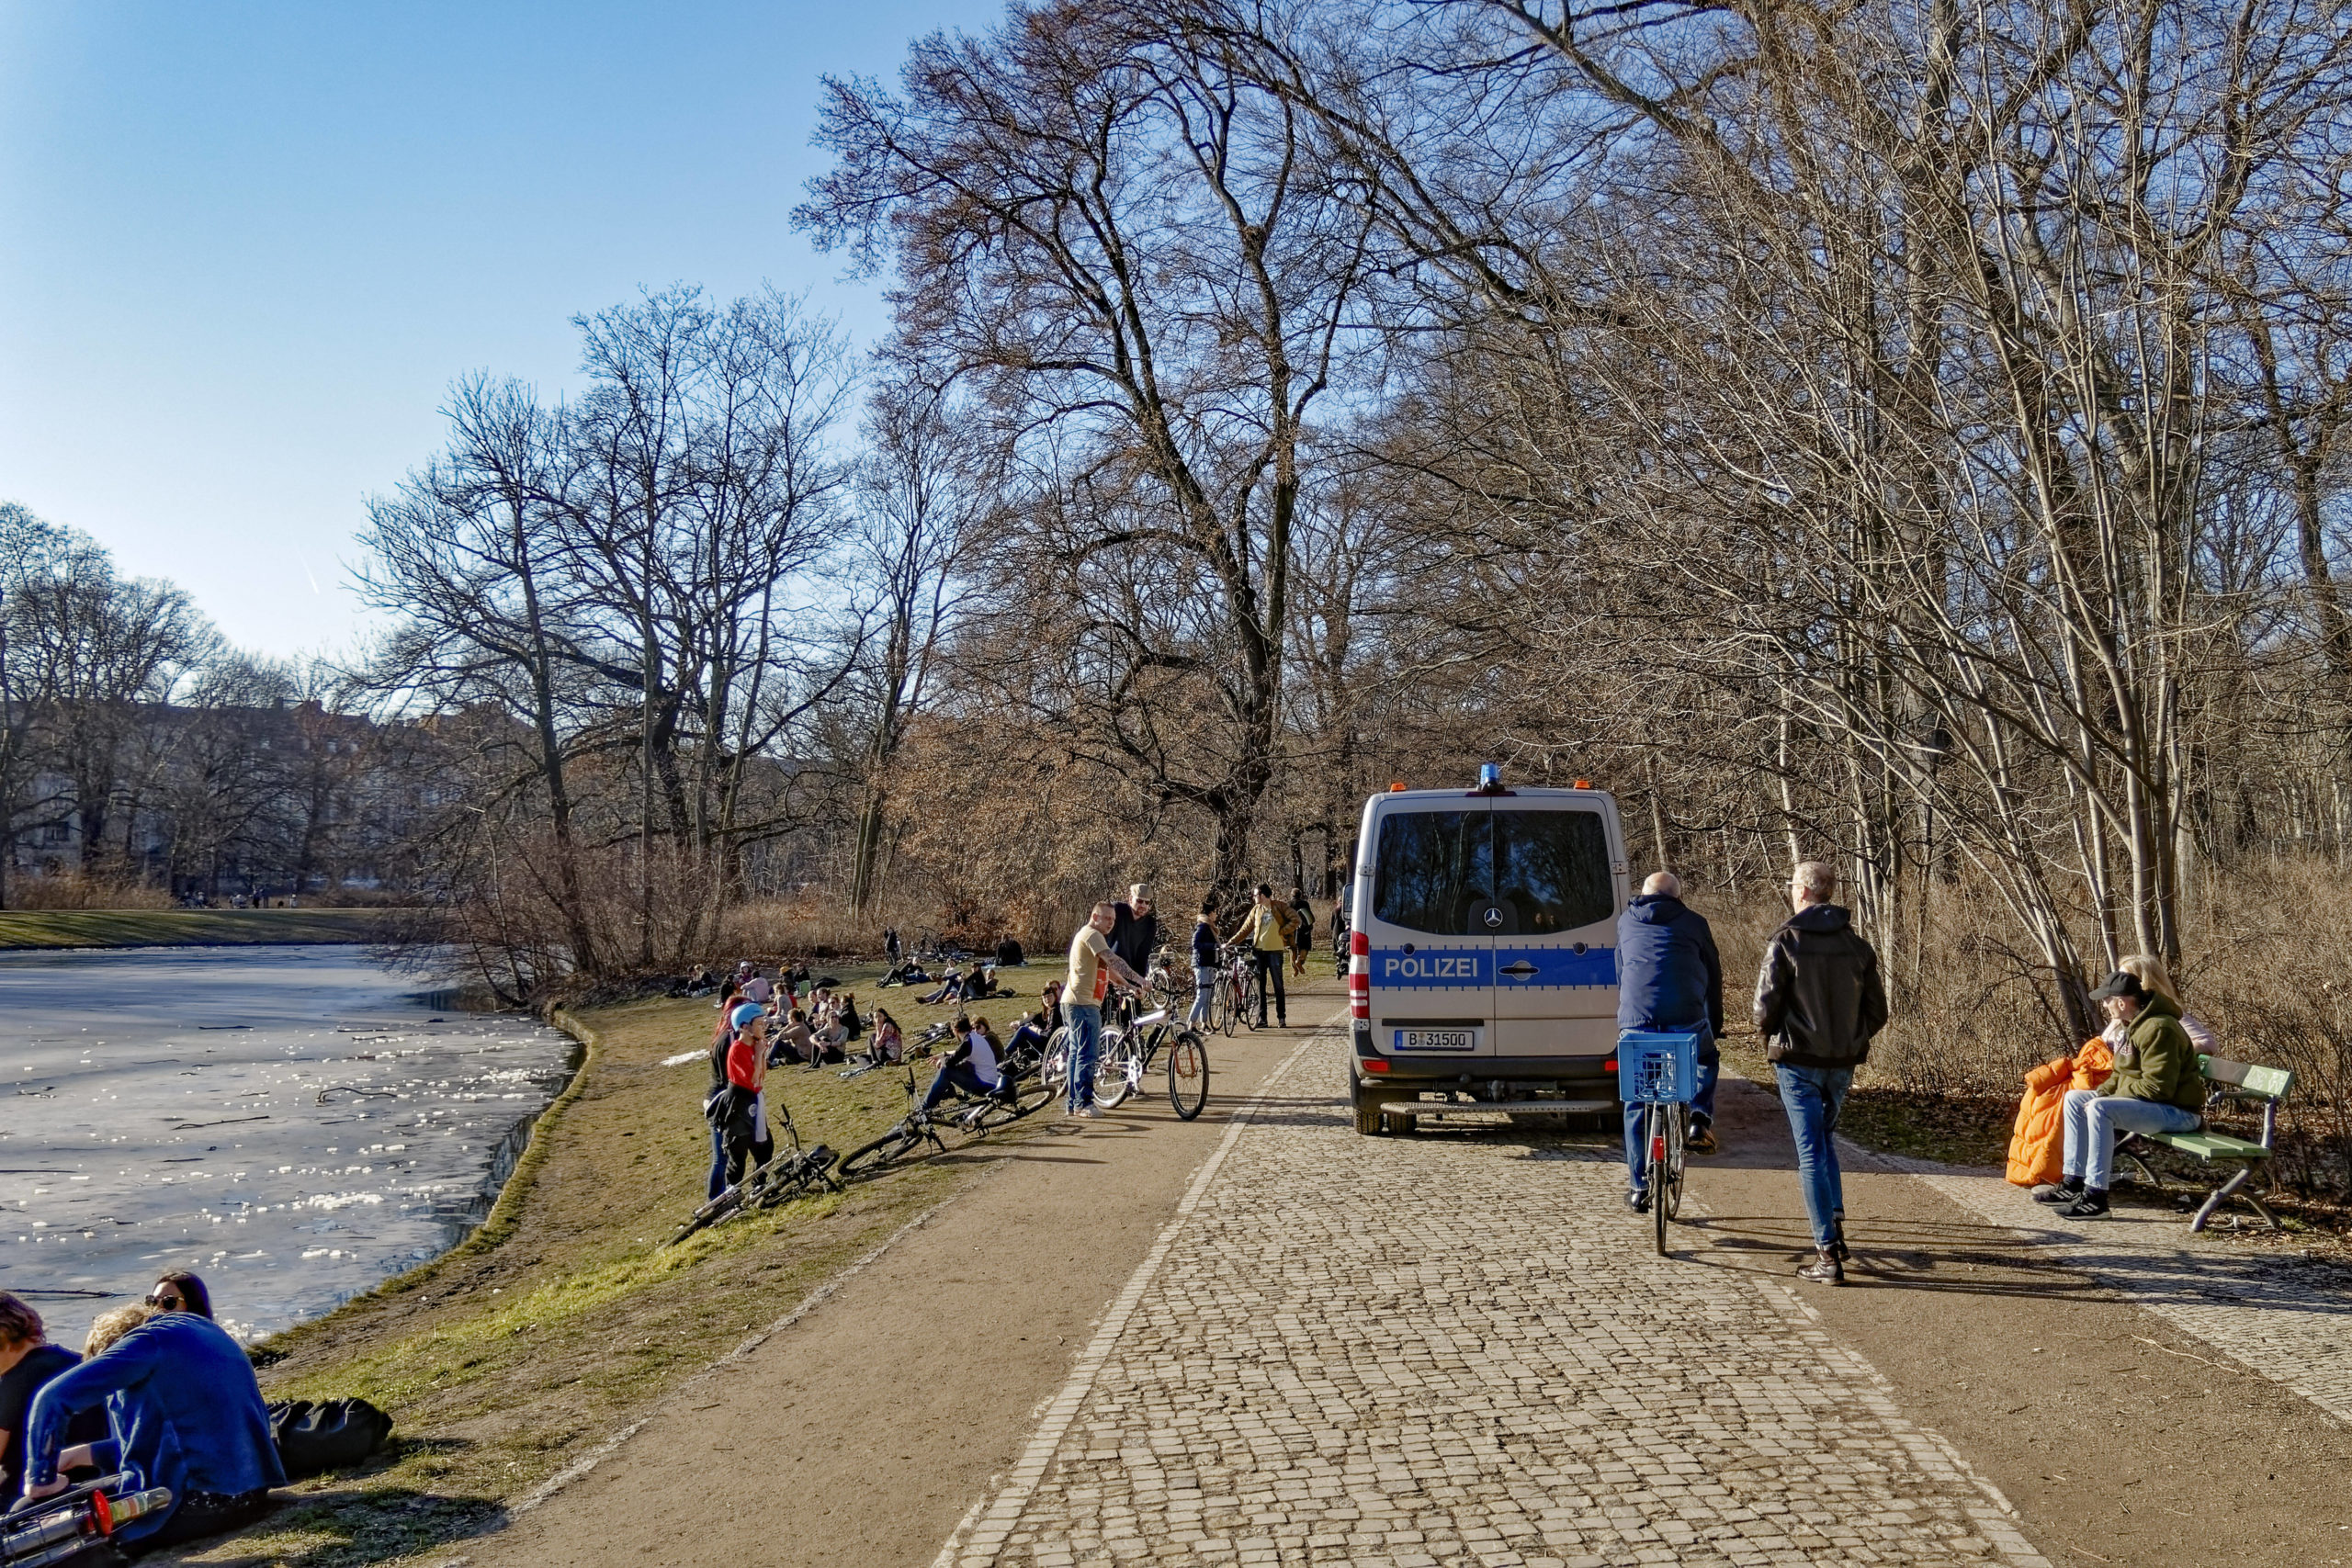 Berlin Die Berliner Polizei kontrollierte die Einhaltung der Abstandsregeln auch im Treptower Park. In dem großen Park war das noch verhältnismäßig gut möglich.